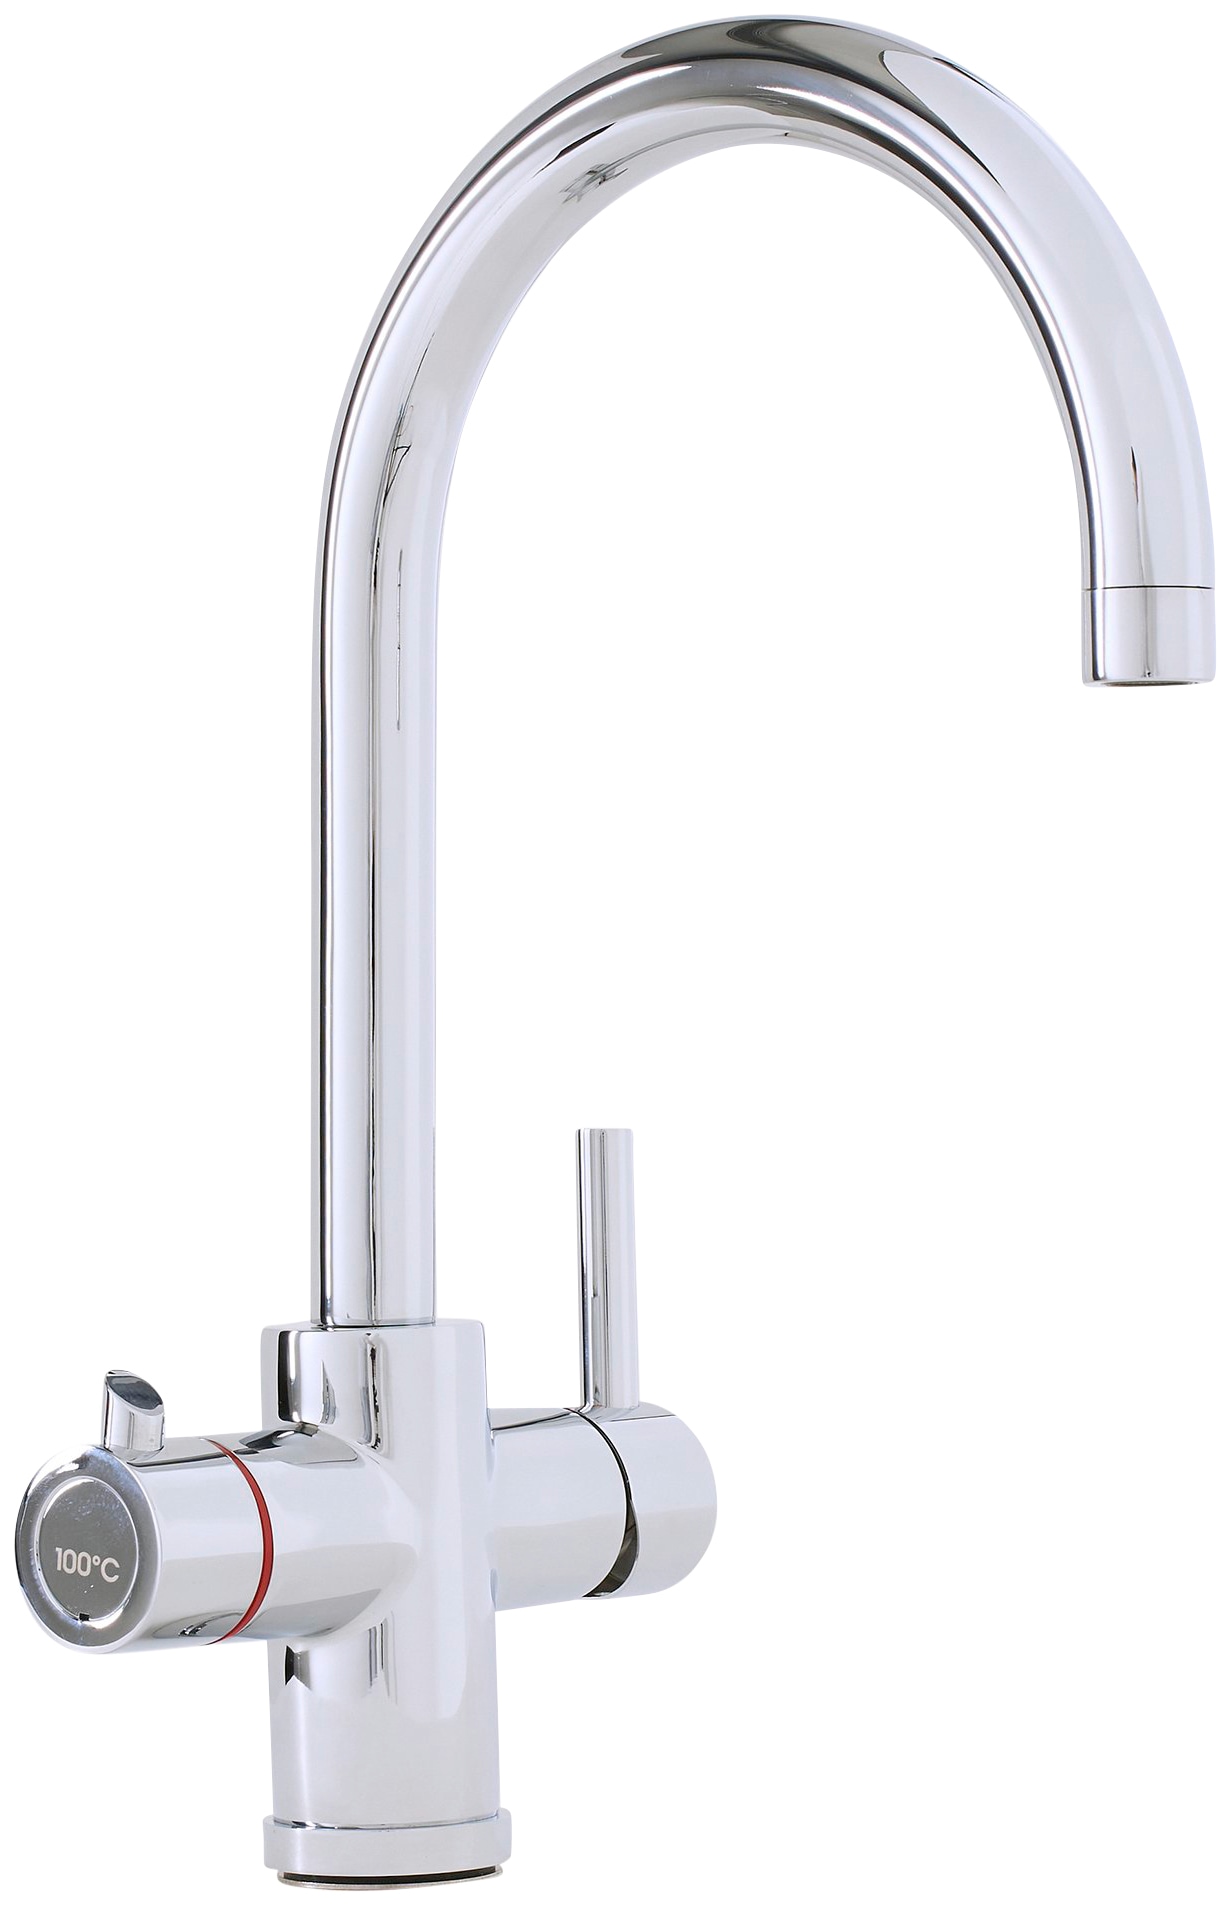 Thermoflow Untertisch-Trinkwassersystem »Thermoflow 100R«, (Komplett-Set), 5 Liter Boiler inklusiver Armatur